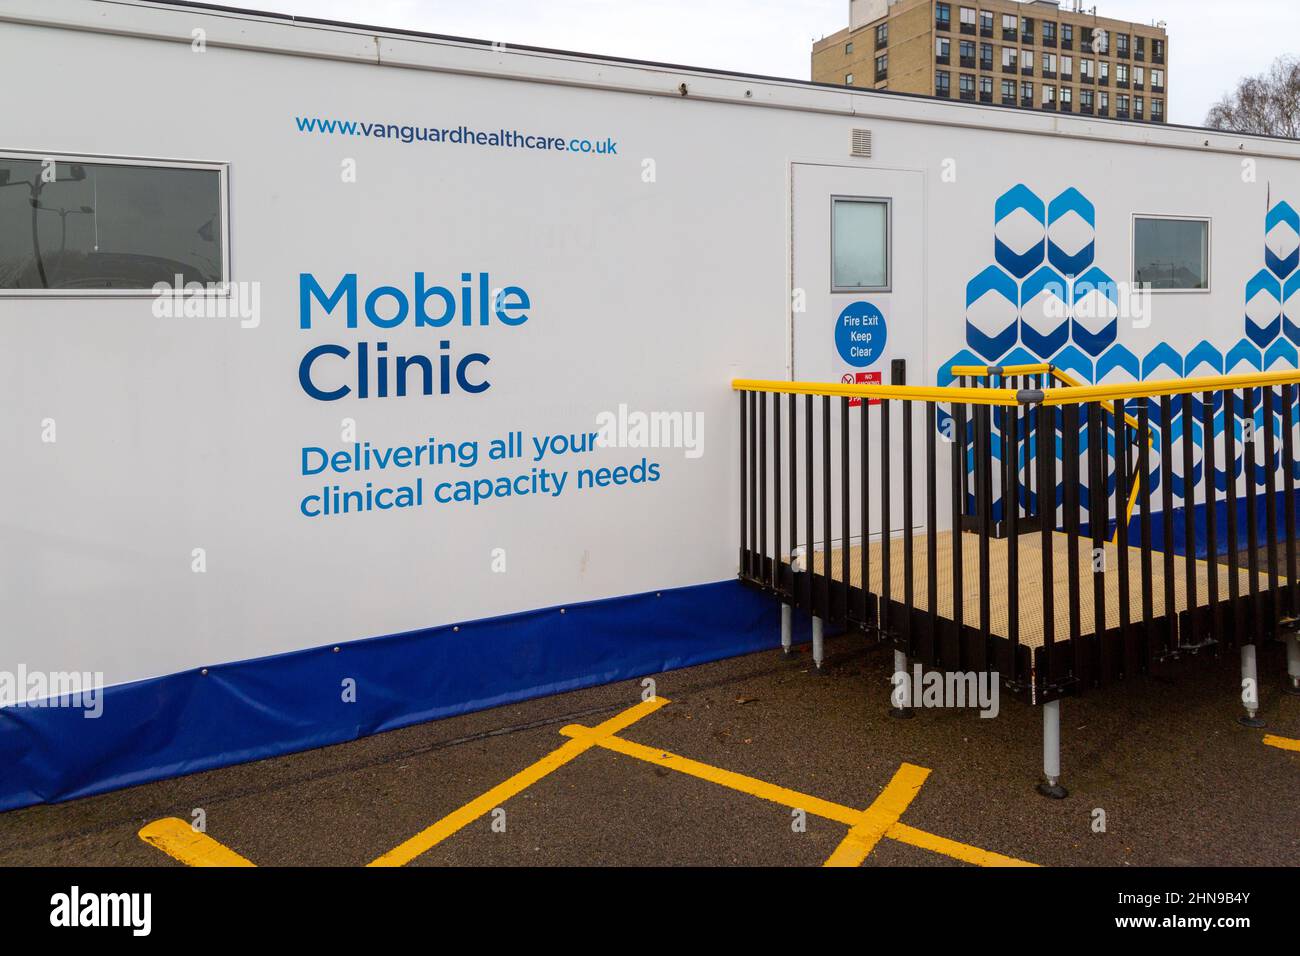 Mobile Clinic edificio NHS temporaneo. Vanguard Health Care, ospedale di Ipswich, Suffolk, Inghilterra, Regno Unito Foto Stock